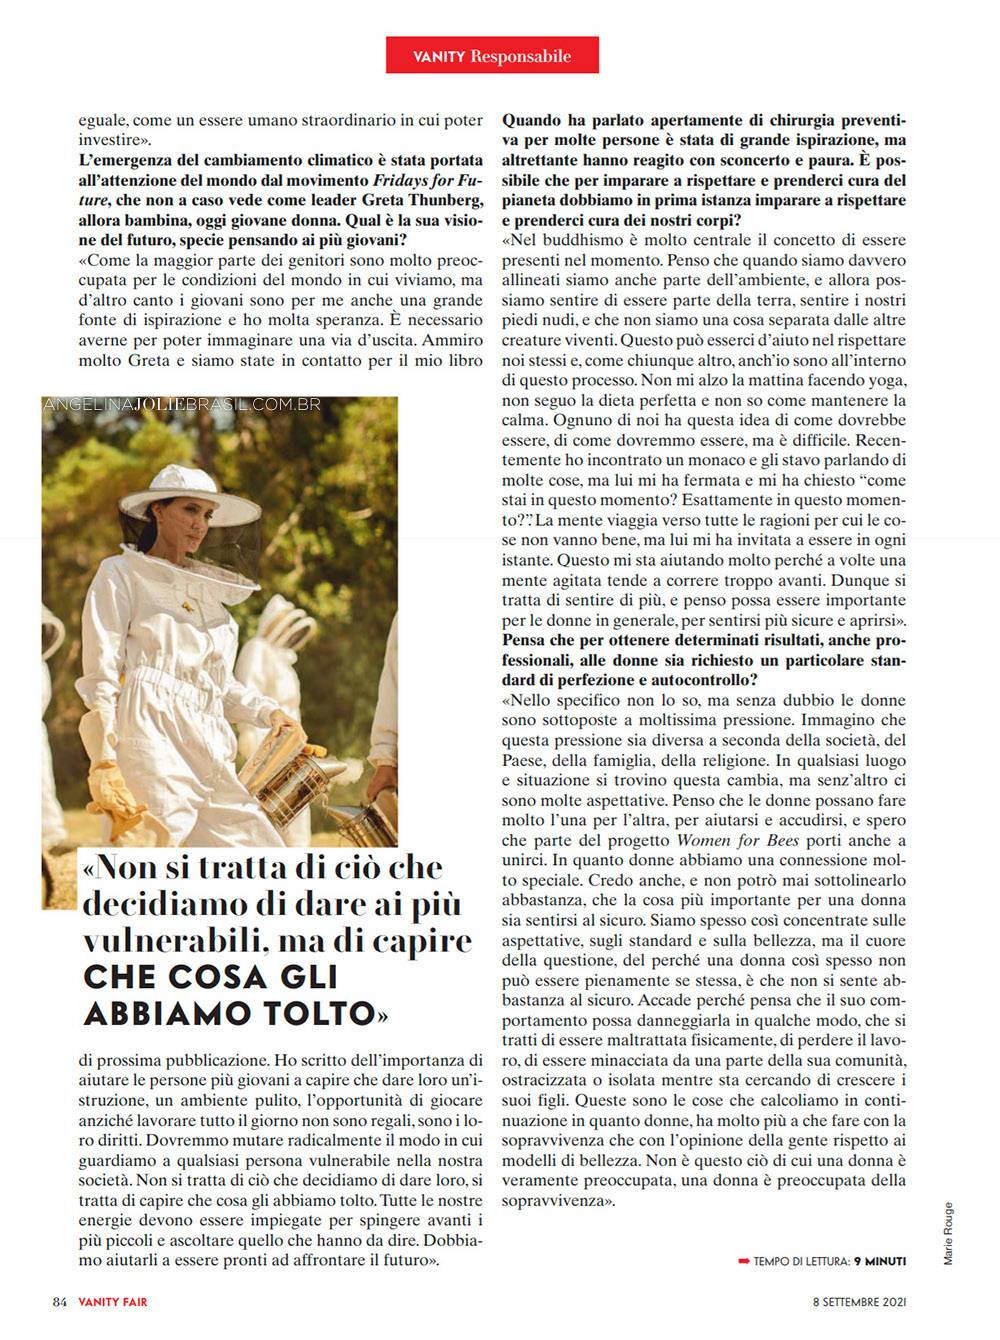 RevistasEScans-2021-09-Setembro-VF-Italia-004.jpg